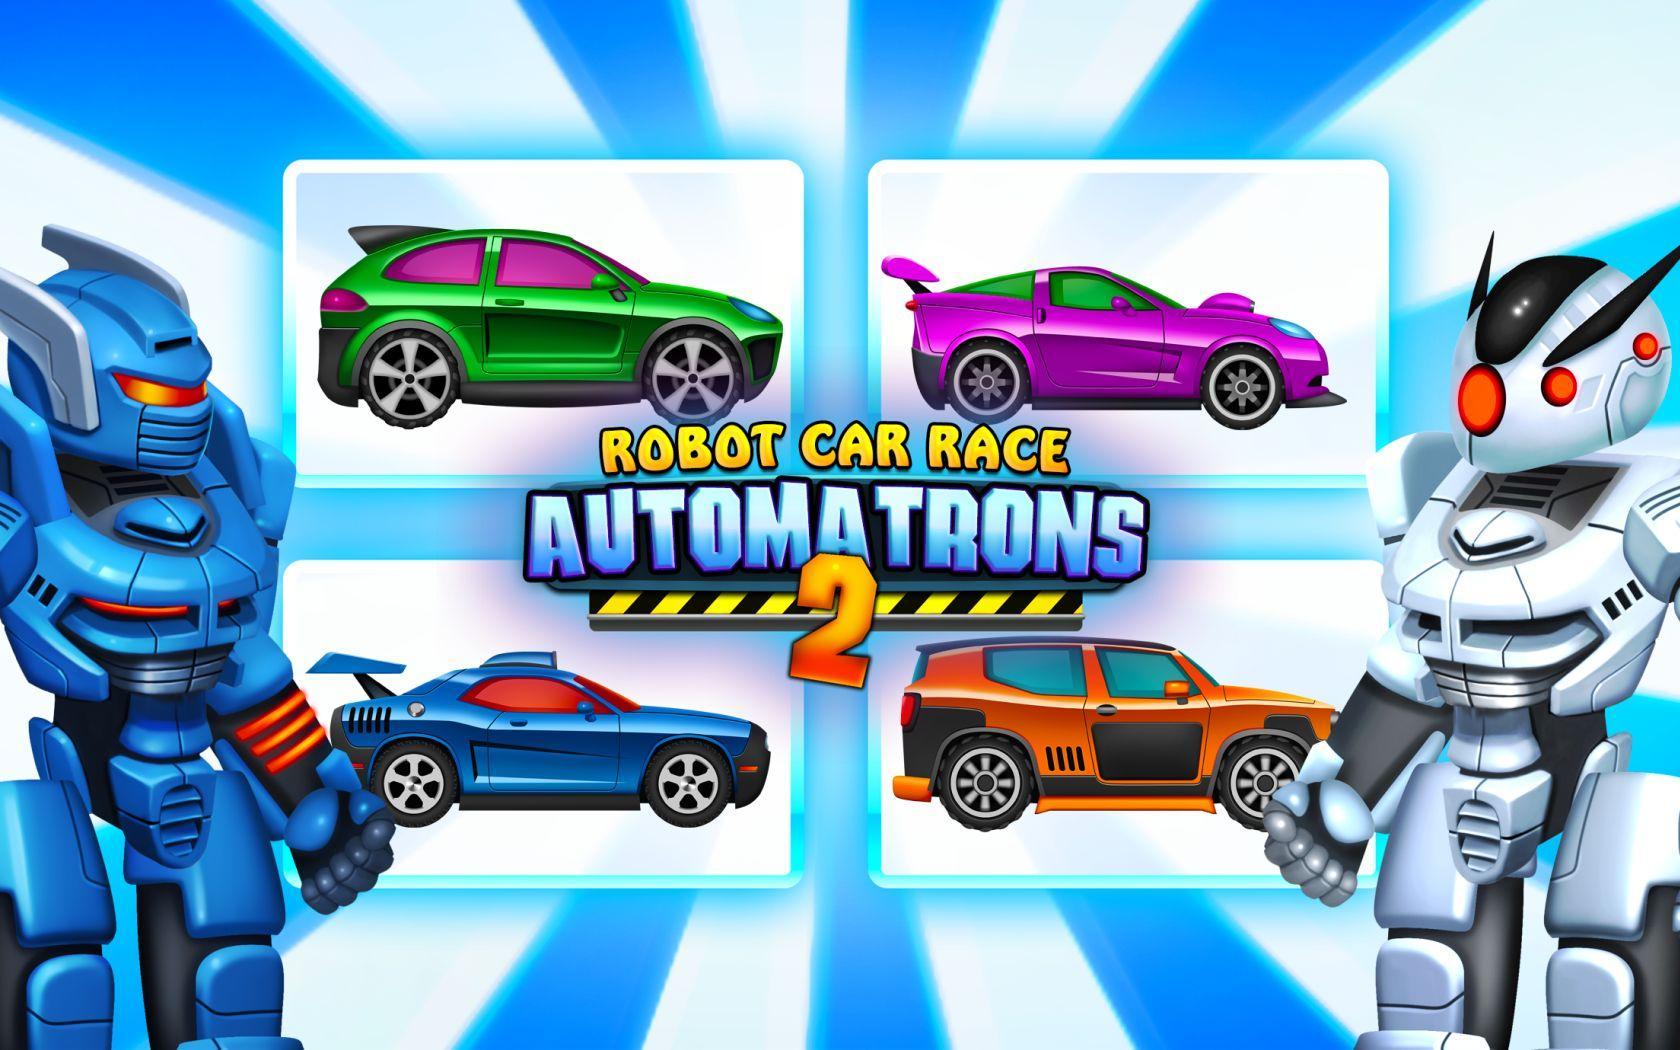 Screenshot 1 of Automatrons 2: 로봇 자동차 변신 레이스 게임 3.62